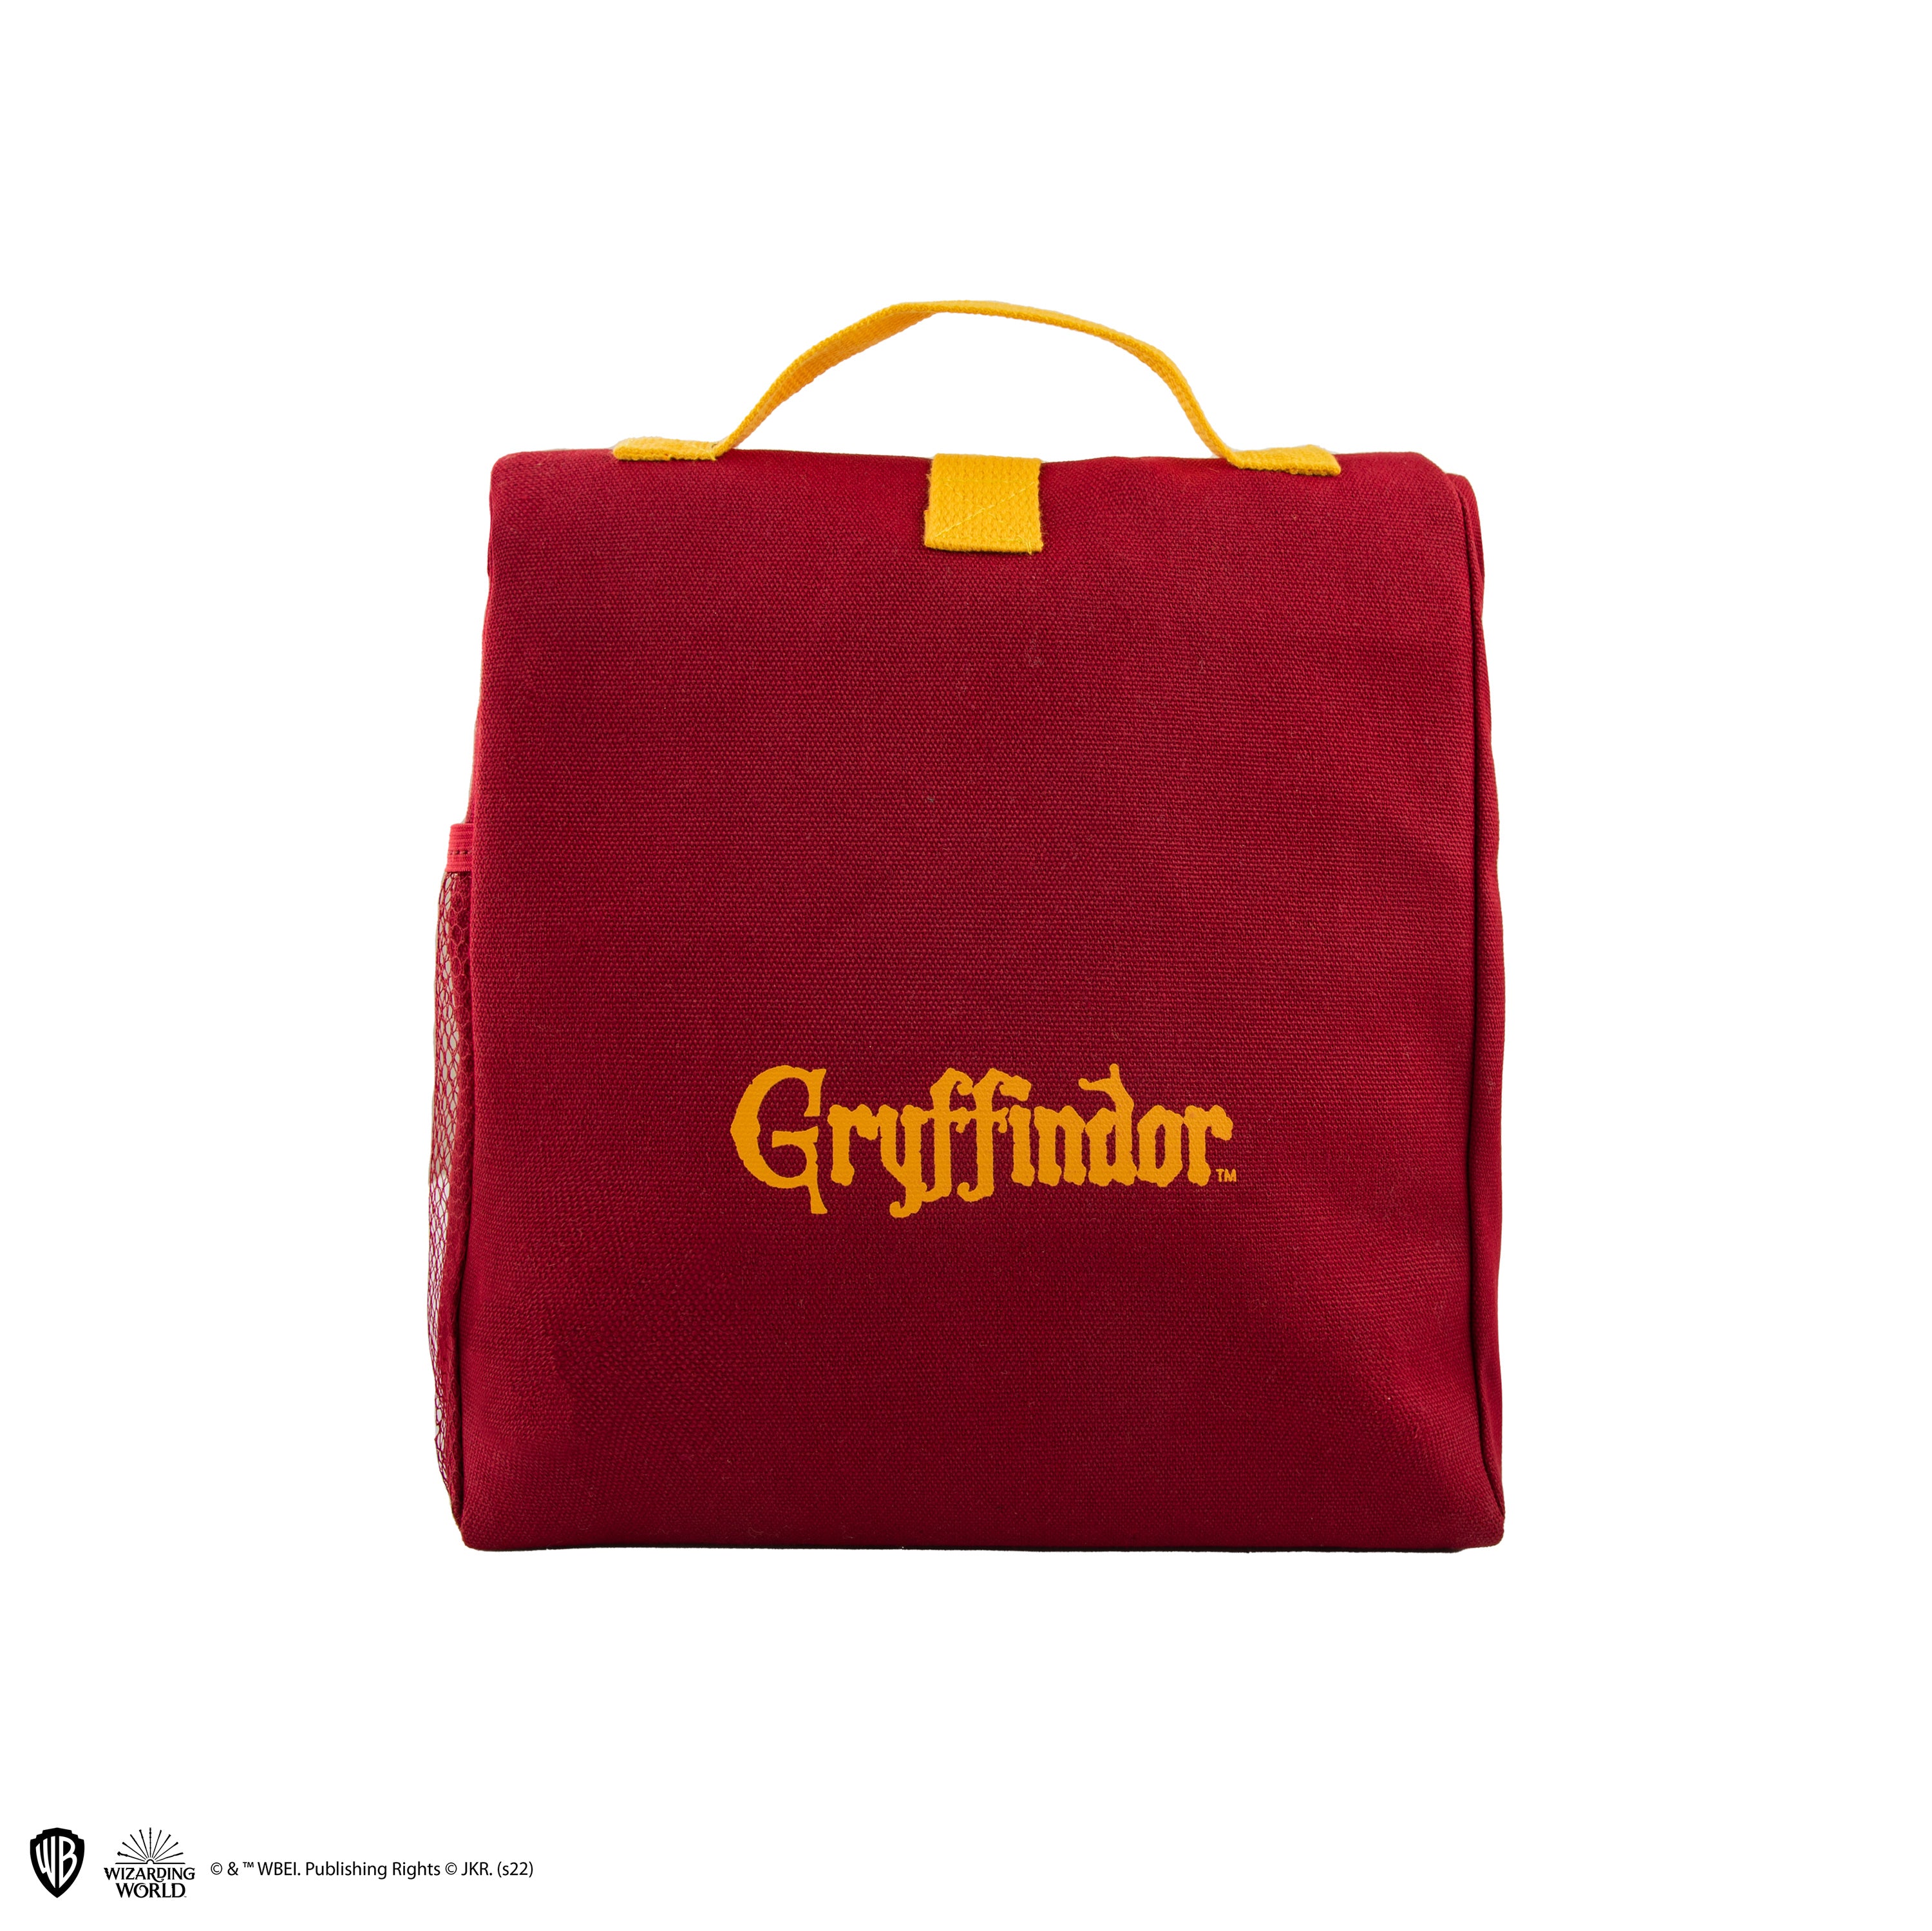 Cinereplicas Harry Potter Lunch Bag Gryffindor Red